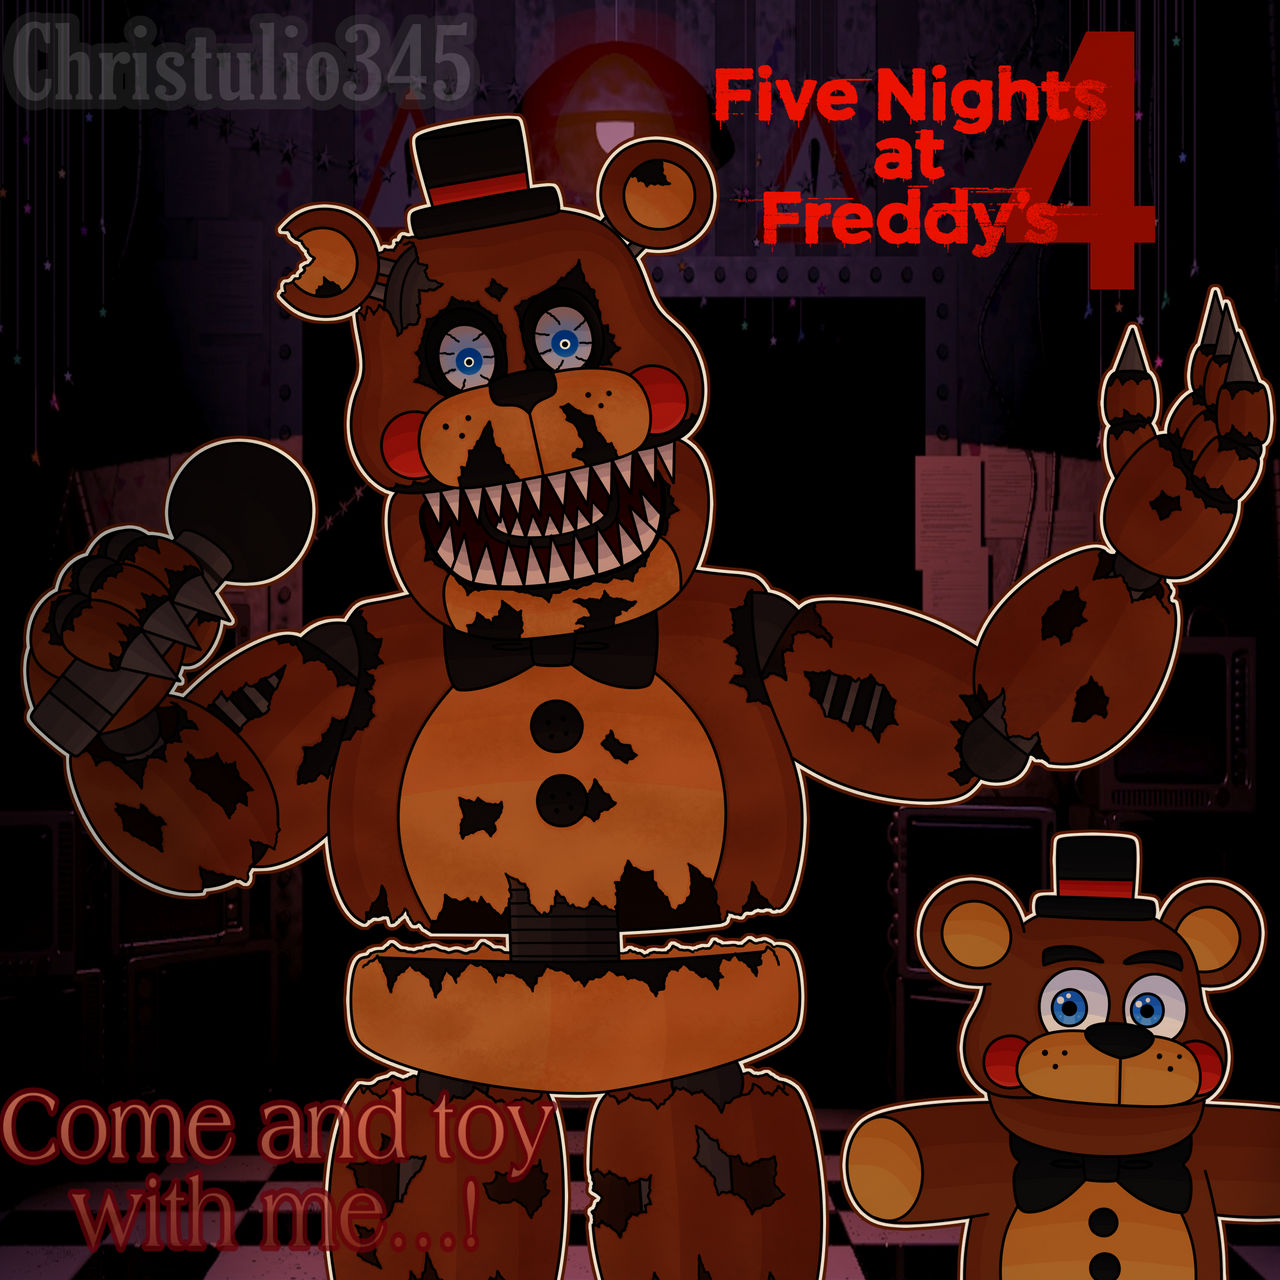 Nightmare Toy Freddy by LeTaiNguyen86 on DeviantArt